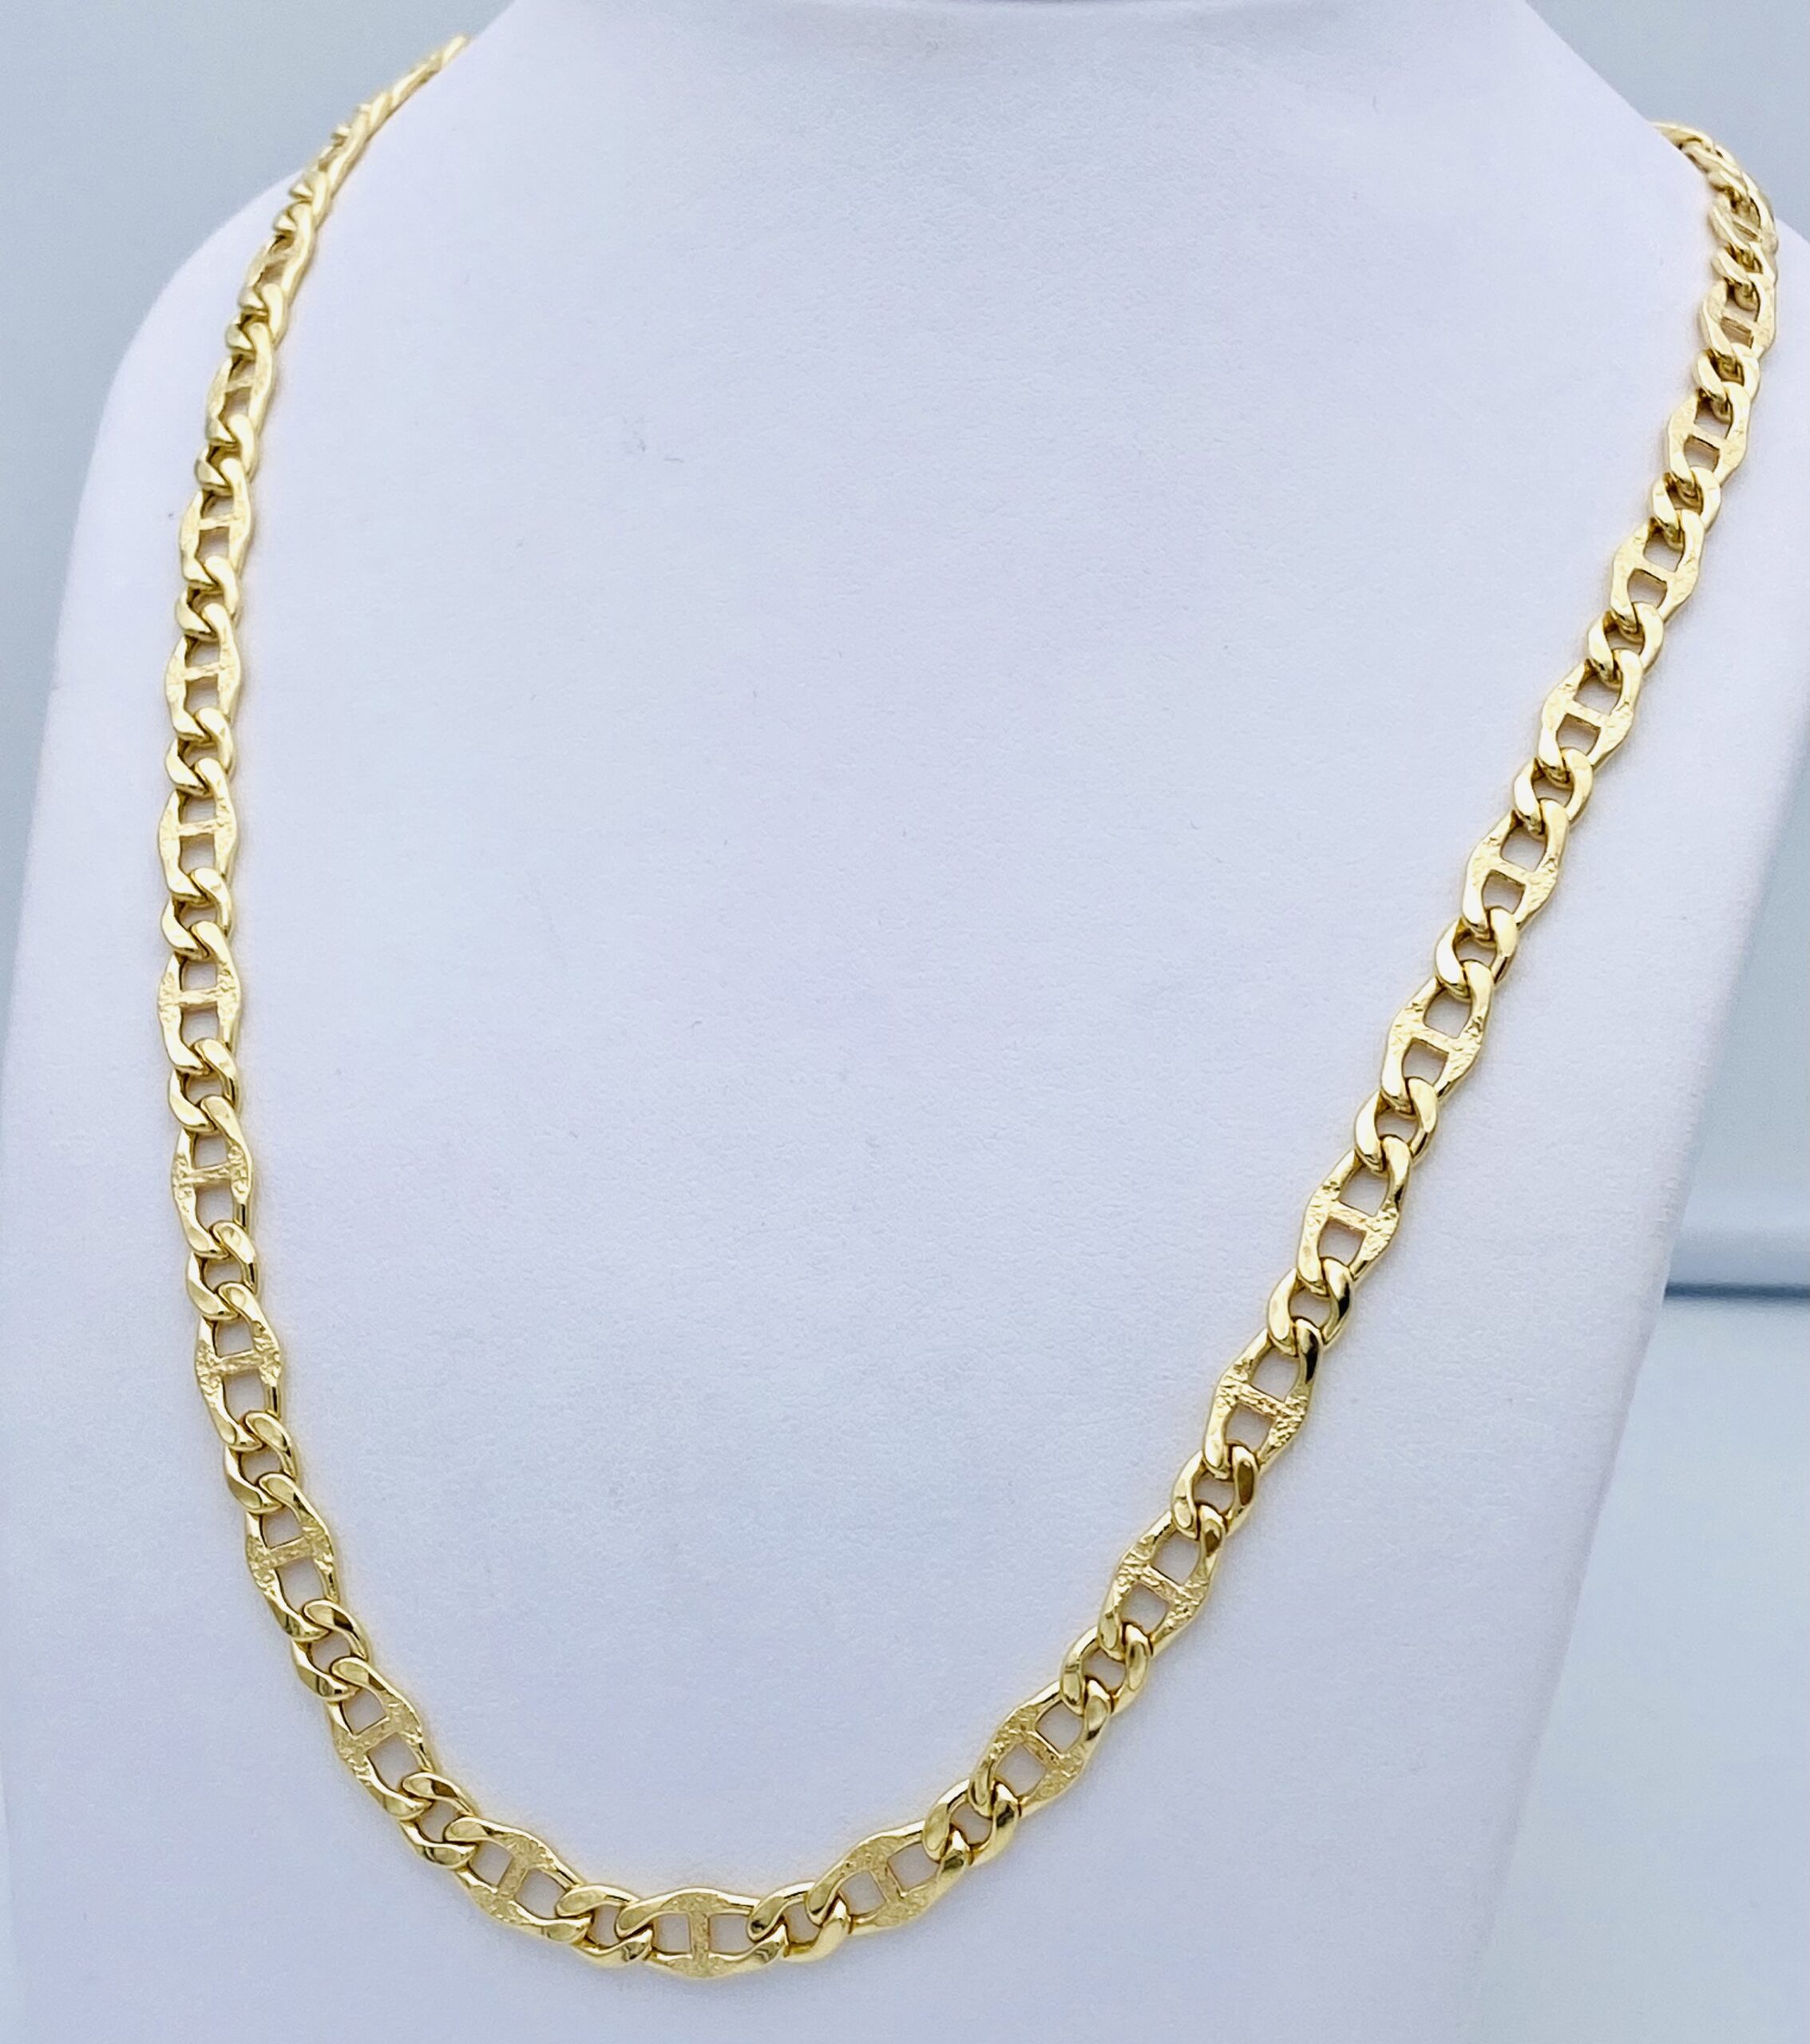 Men’s gold round necklace 750% GR. 16,20 ART. CORC12